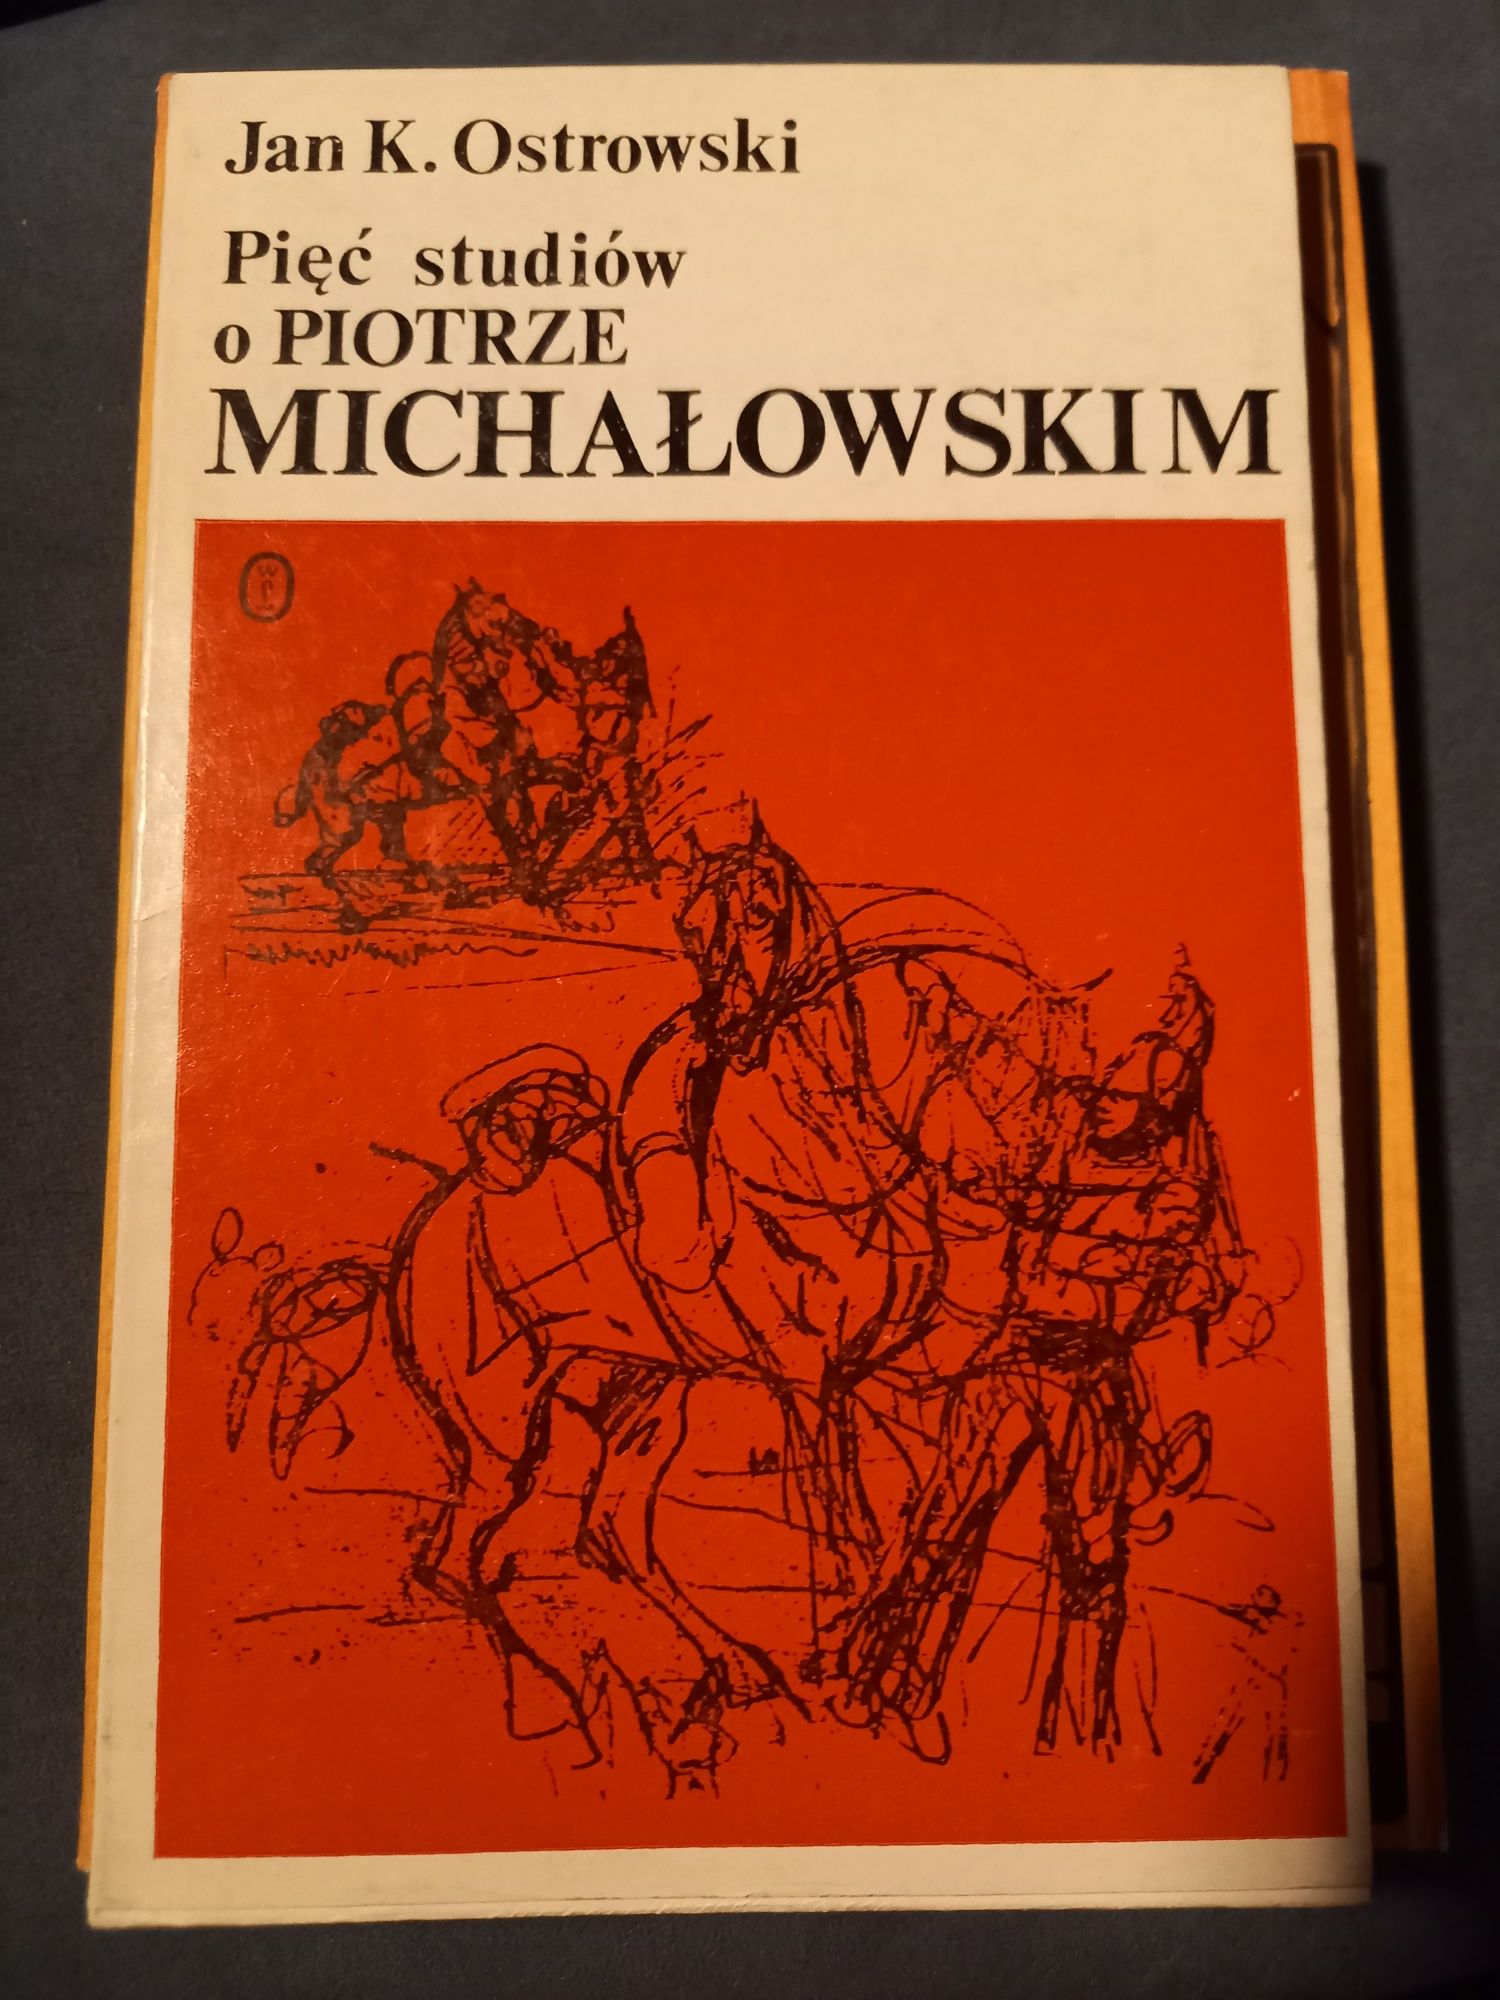 Pięć studiów o Piotrze Michałowskim. J.K. Ostrowski